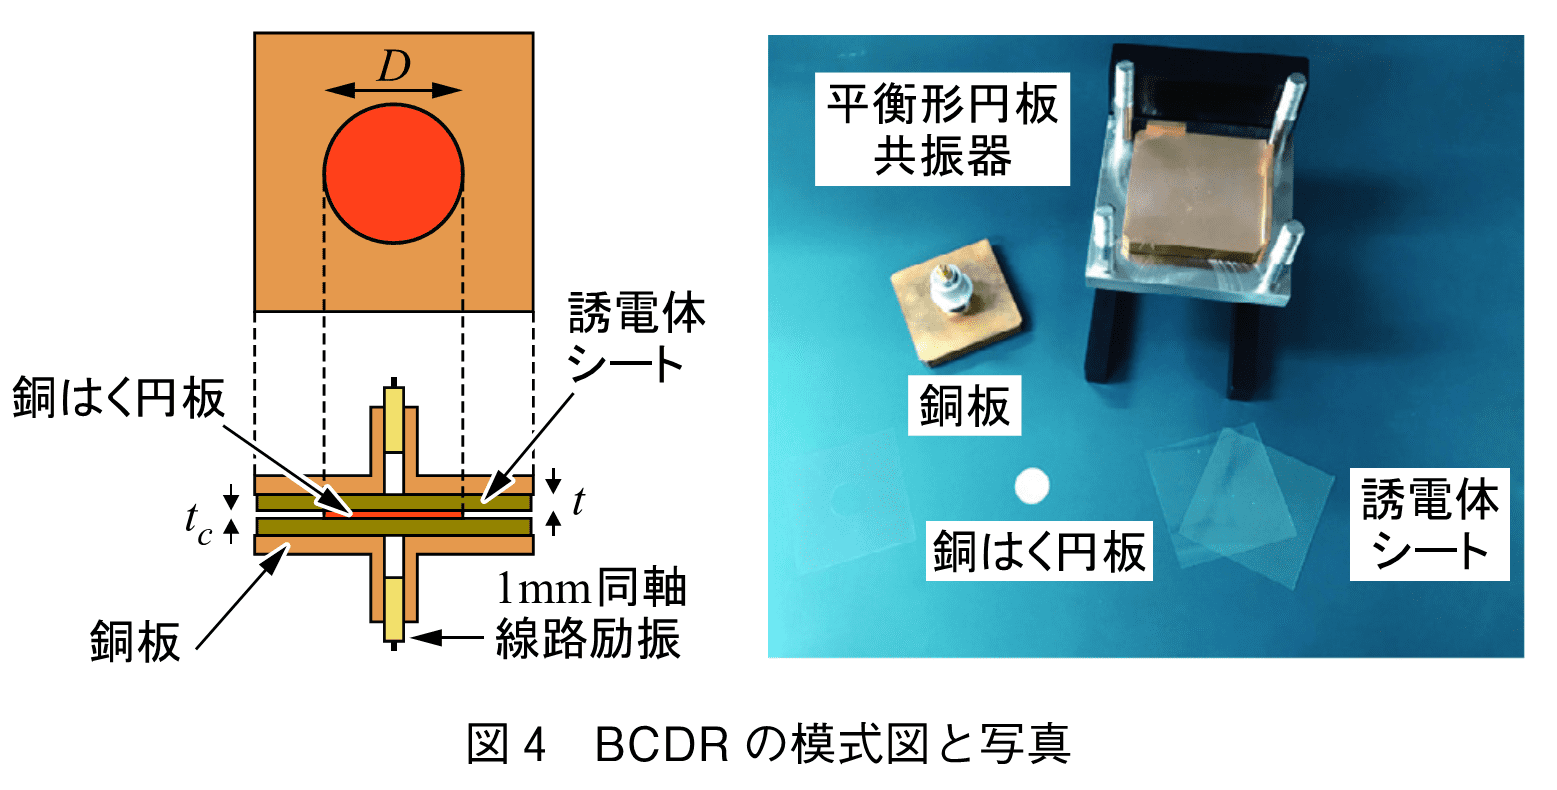 図4　BCDR の模式図と写真